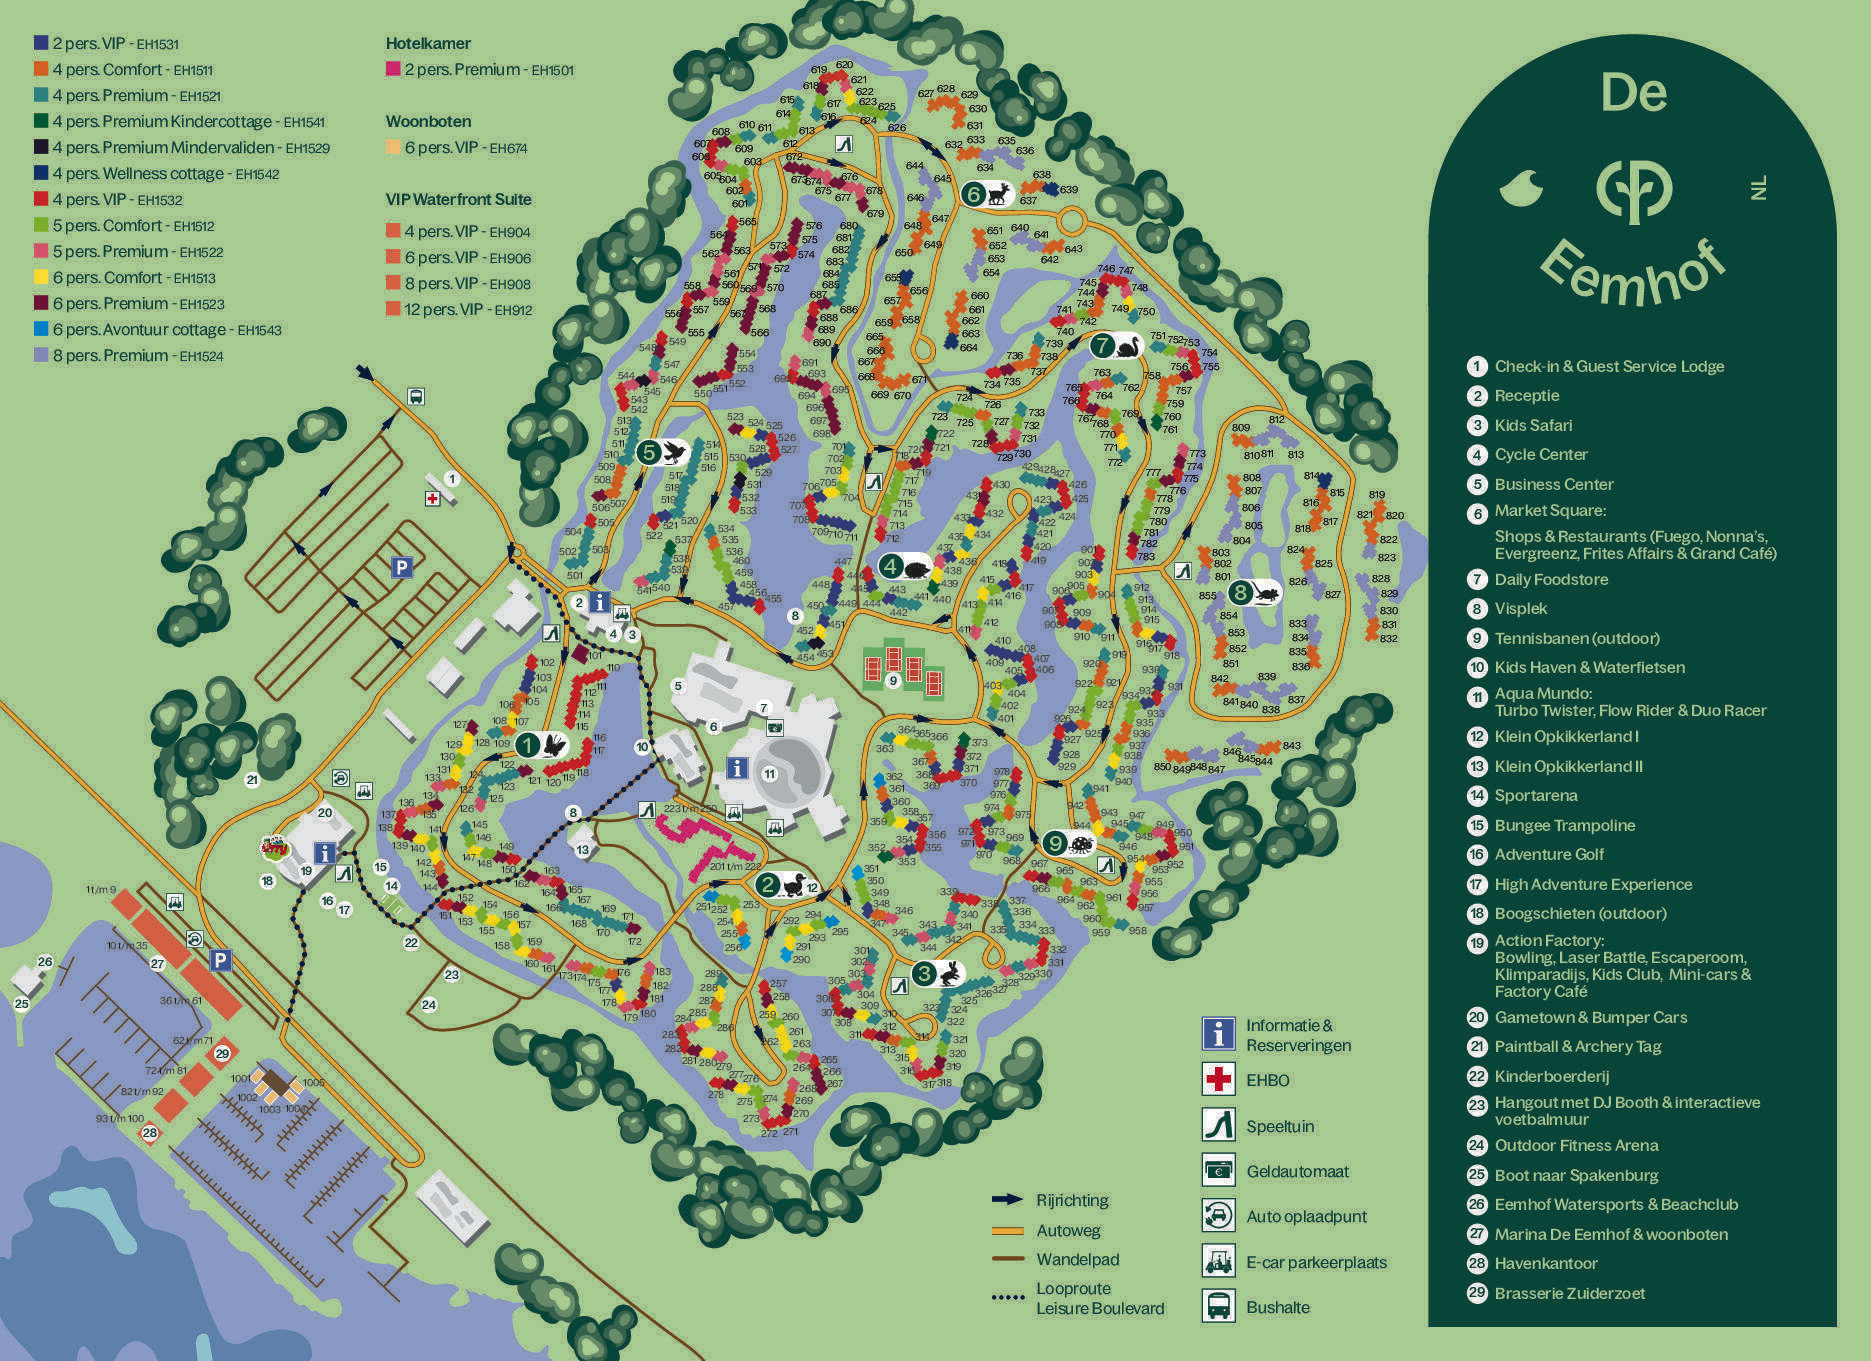 Center Parcs; inventarisatie uitbreidingsmogelijkheden diverse parken.